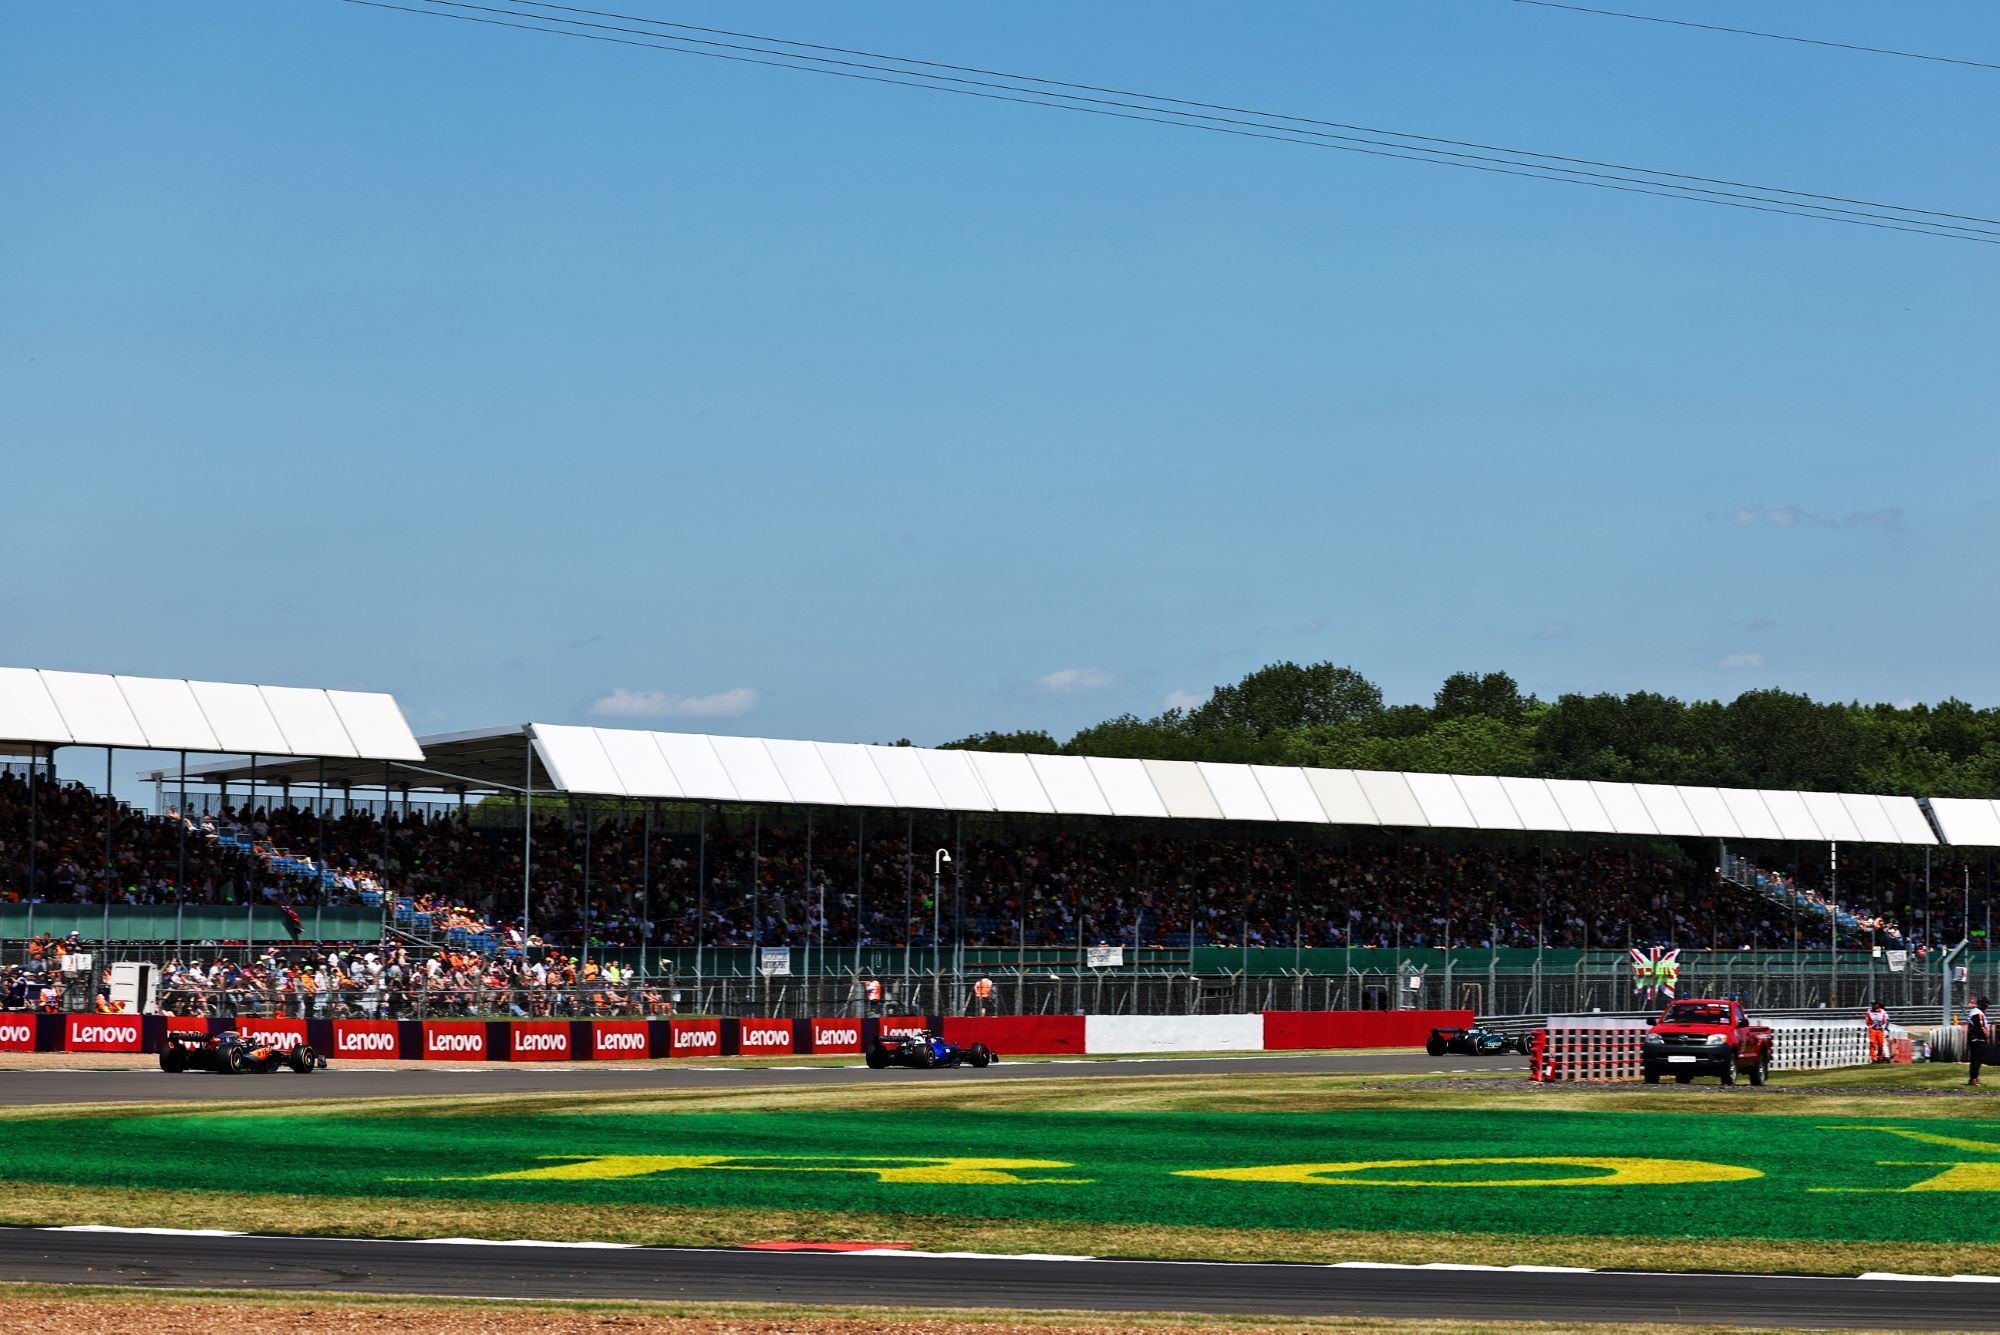 F1: Krack classifica desempenho da Aston Martin no GP da Inglaterra como “minimização de danos”